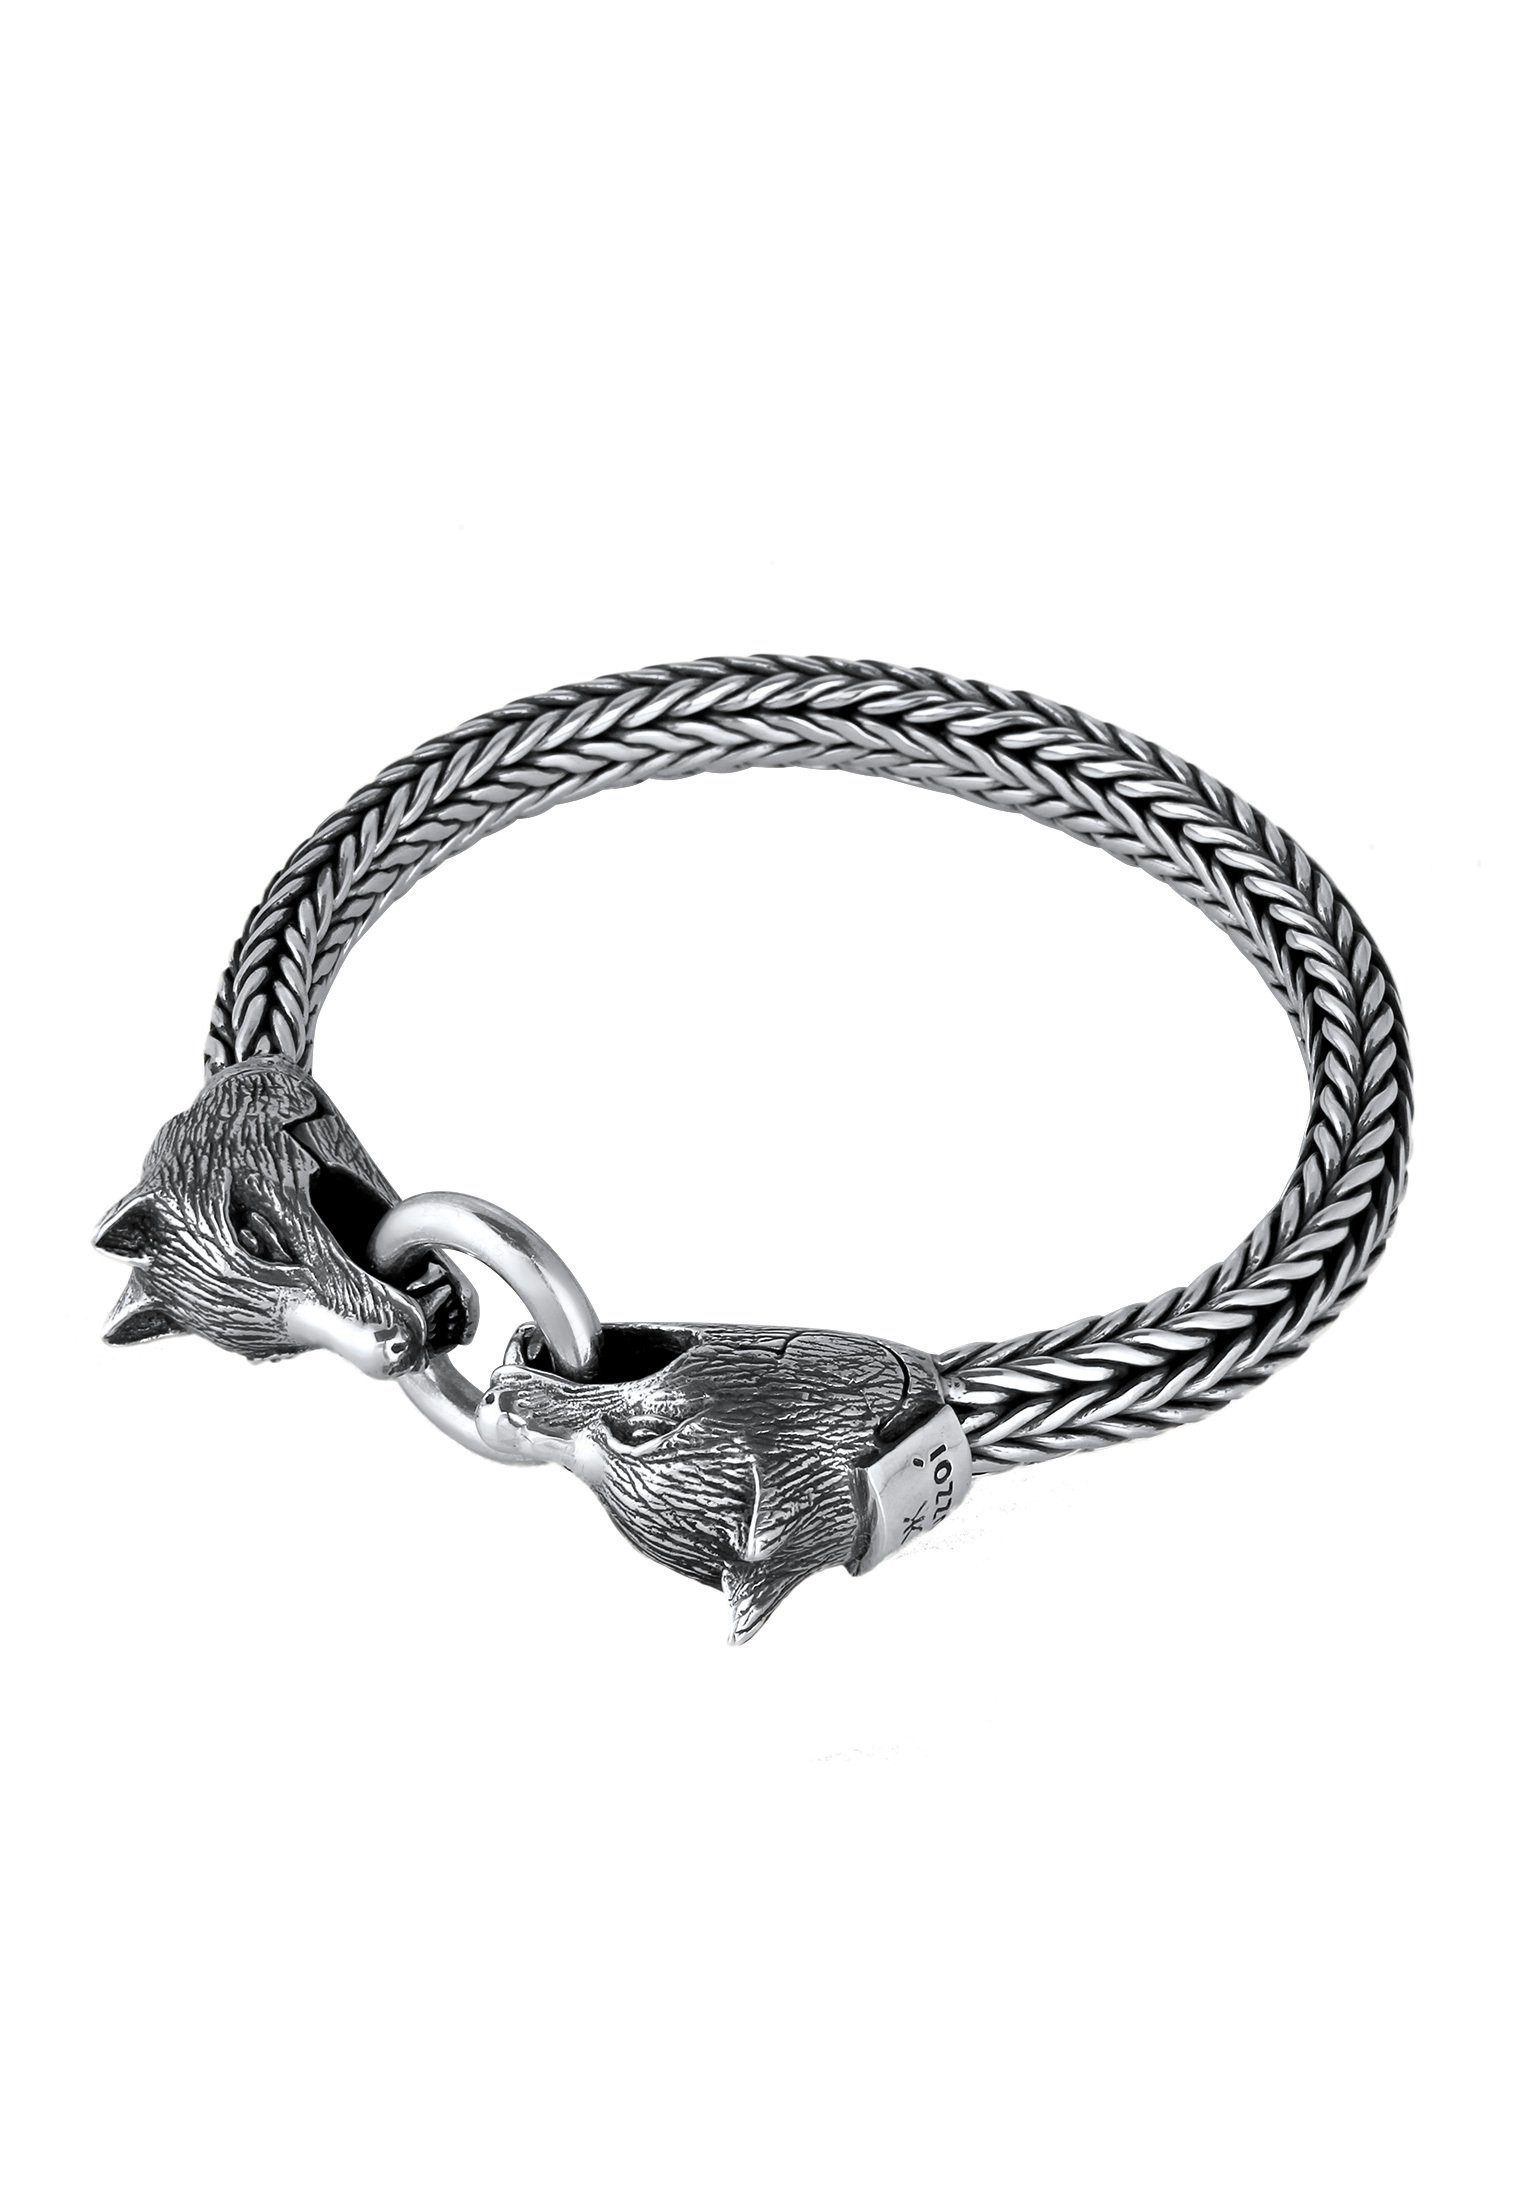 Ringverschluss und 925 Silber, Rund Kuzzoi Zopfdesign Schmuckstück handgefertigt Wolfskopf oxidiert Herren Armband